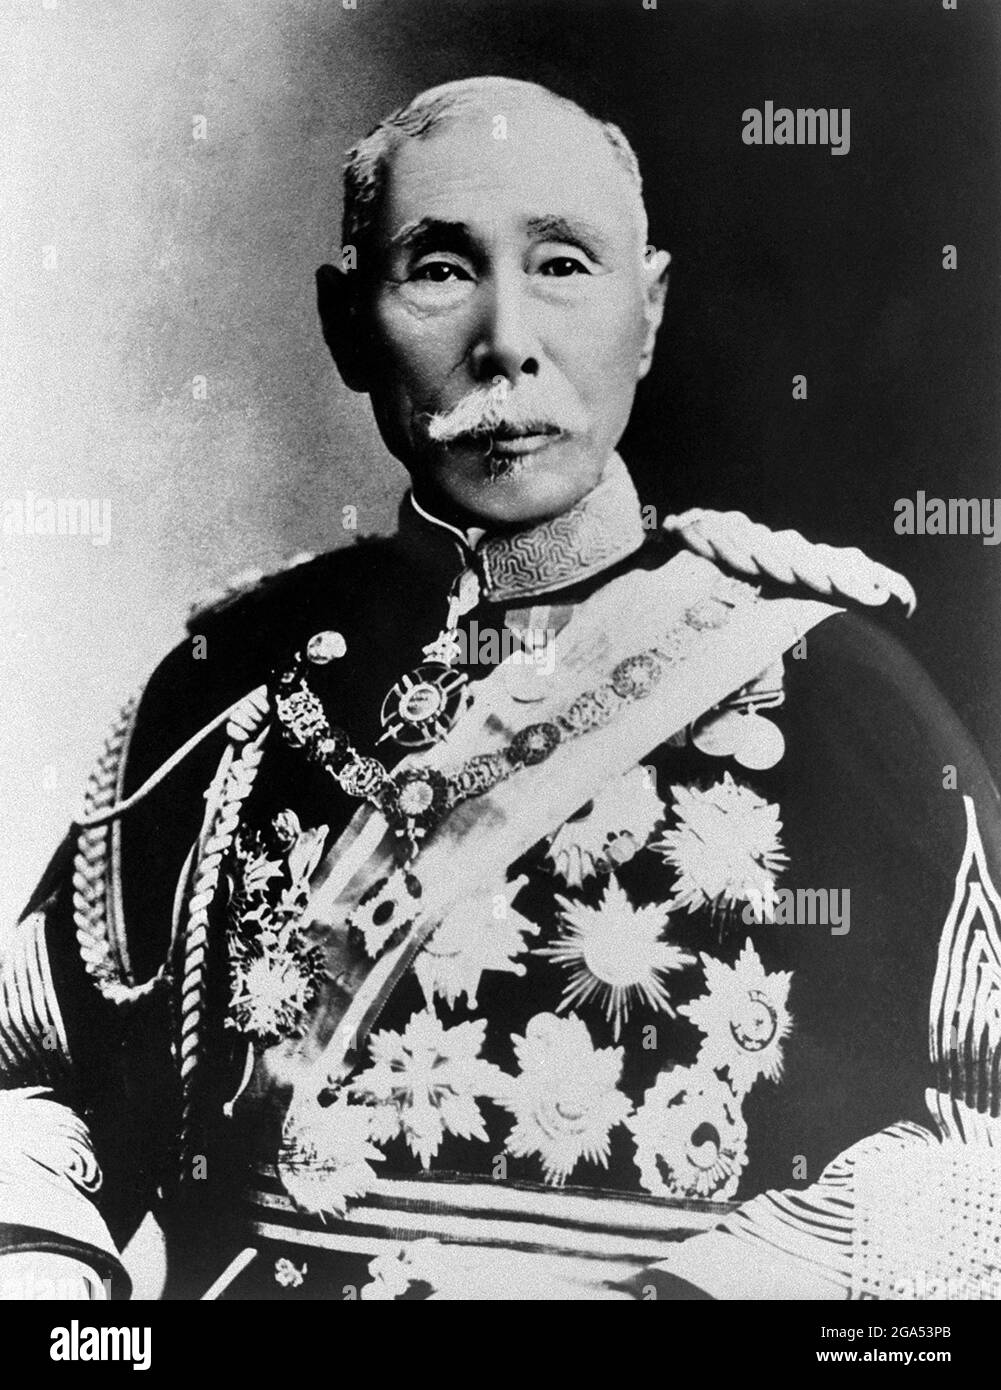 Japon: Aritomo Yamagata (14 juin 1838 – 1er février 1922), Premier ministre du Japon de 1909 à 1922. Le prince Yamagata Aritomo, également connu sous le nom de Yamagata Kyōsuke, était un maréchal japonais, deux fois élu Premier ministre du Japon, et un des dirigeants de l'oligarchie Meiji. En tant que premier chef d’état-major de l’Armée impériale japonaise, il a été le principal architecte de la fondation militaire du Japon moderne. Banque D'Images